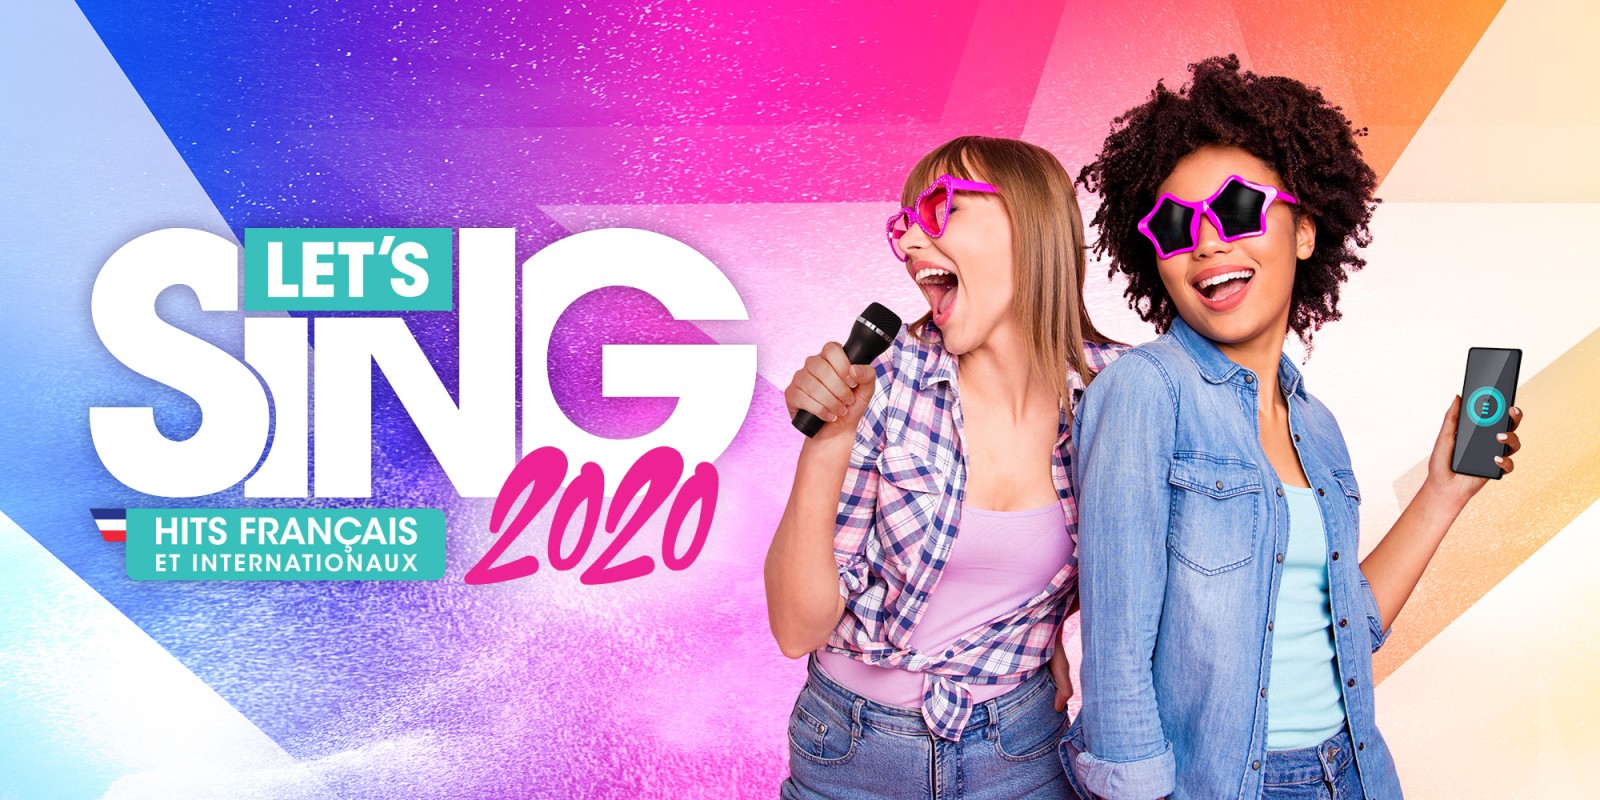 Let's Sing 2020 Hits Français et Internationaux